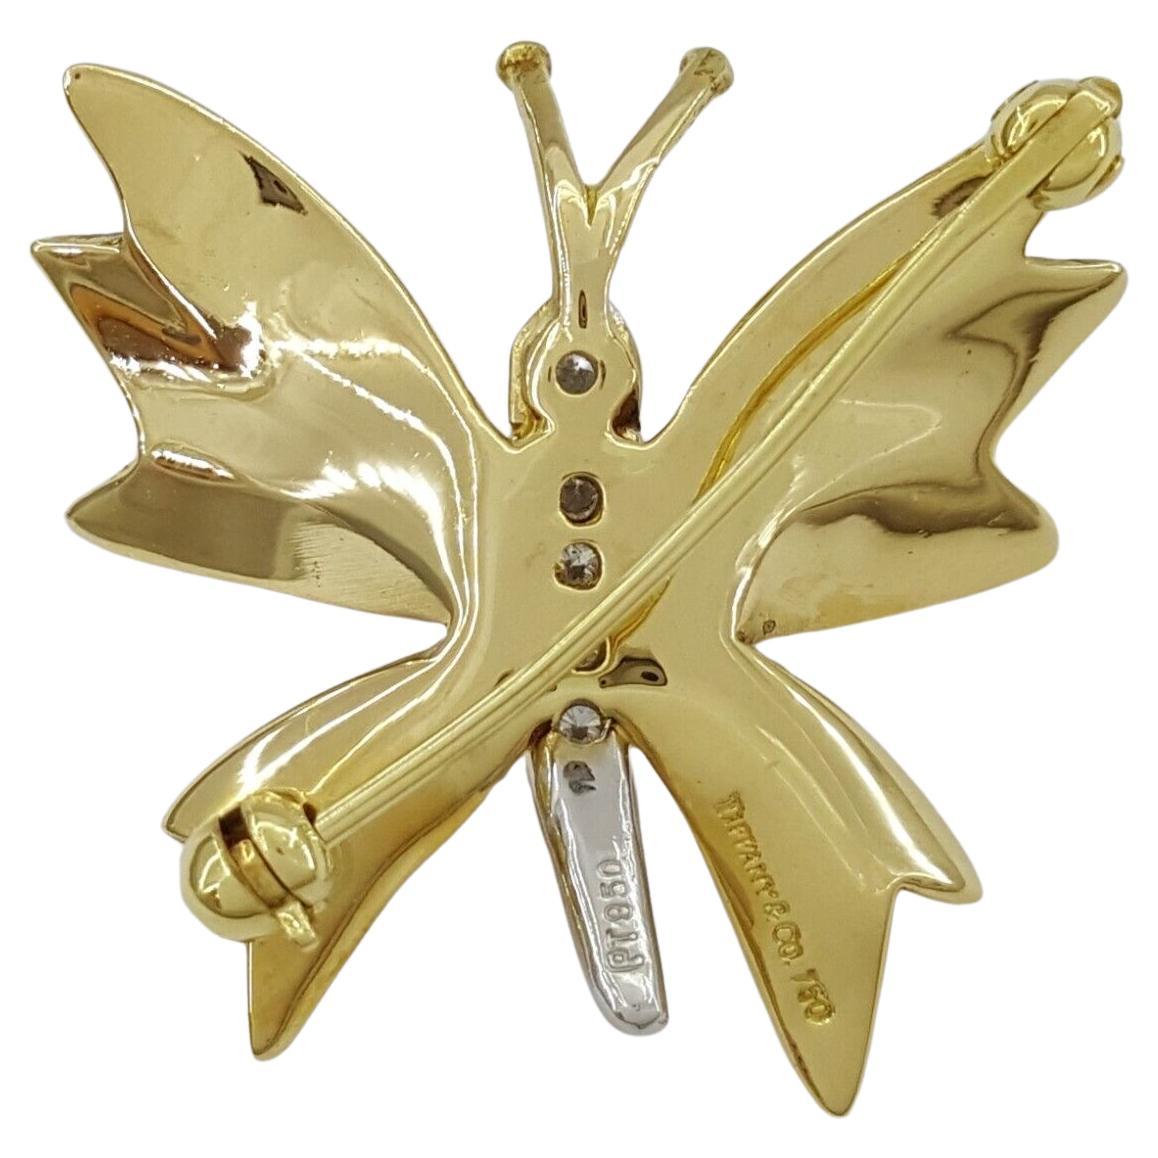 Genuine Tiffany & Co. présente une exquise broche / épingle à papillon en or jaune 18K et platine, ornée d'un diamant rond totalisant 0,09 carats.

Cette magnifique pièce pèse 5,5 grammes et mesure 25 mm de largeur, 24 mm de hauteur et 2,8 mm